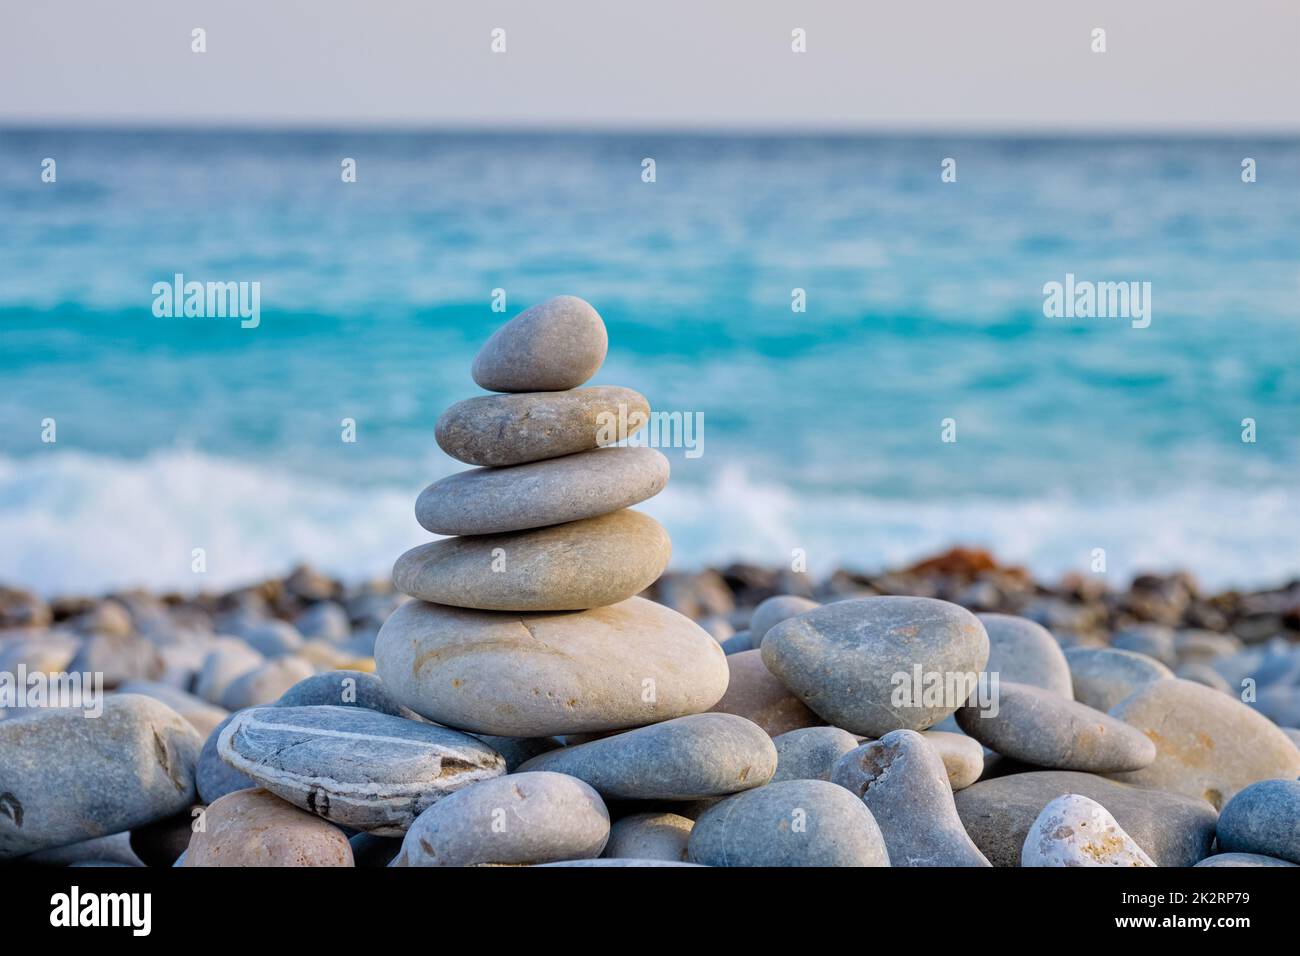 Équilibré sur la pile de pierres Zen beach Banque D'Images